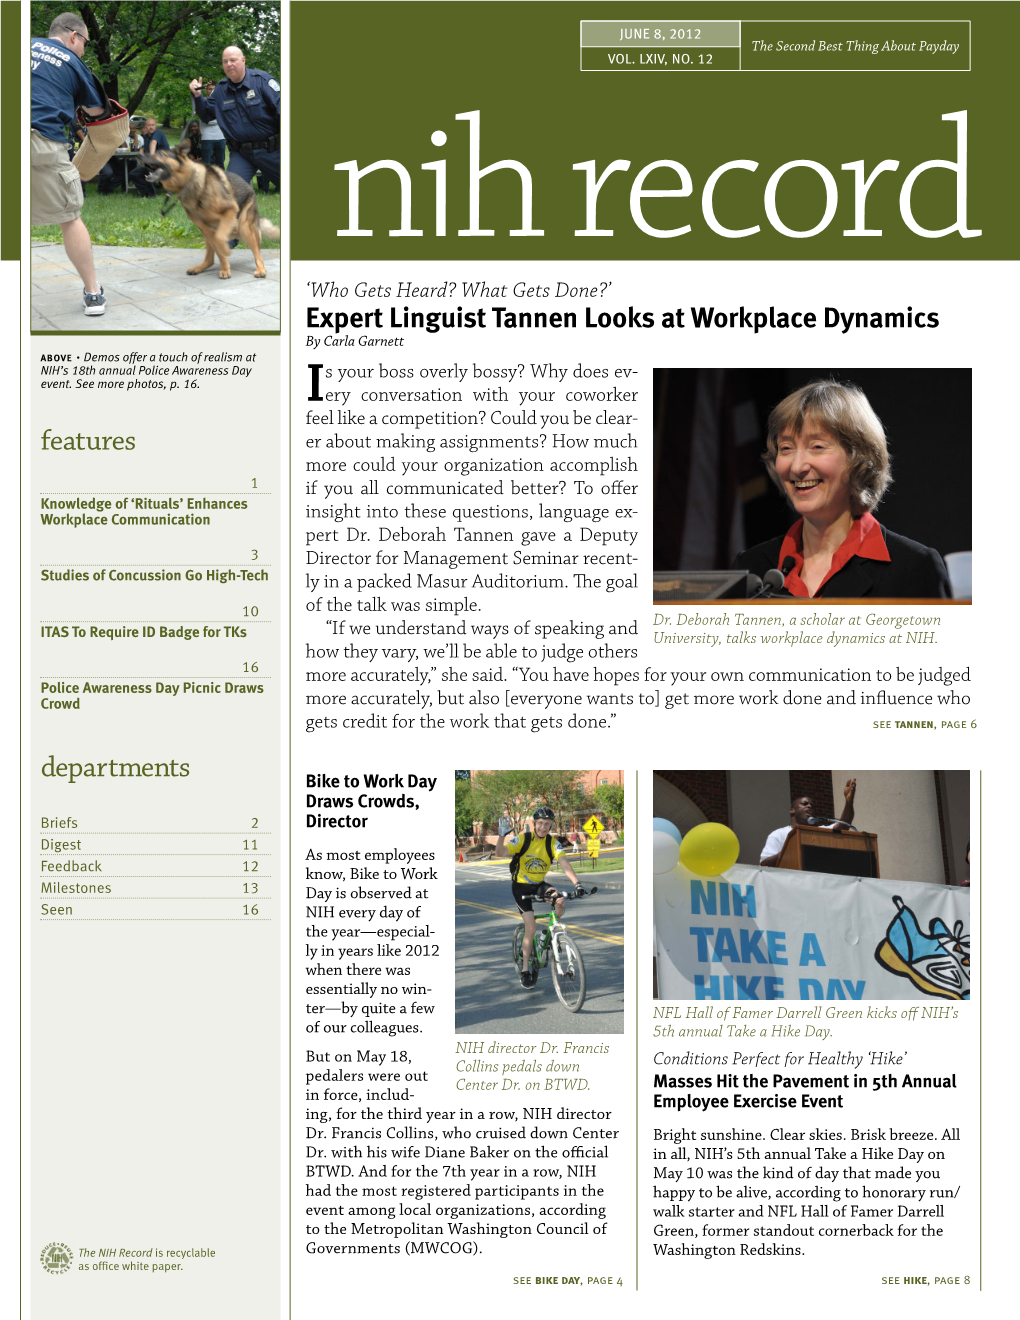 June 8, 2012, NIH Record, Vol. LXIV, No. 12